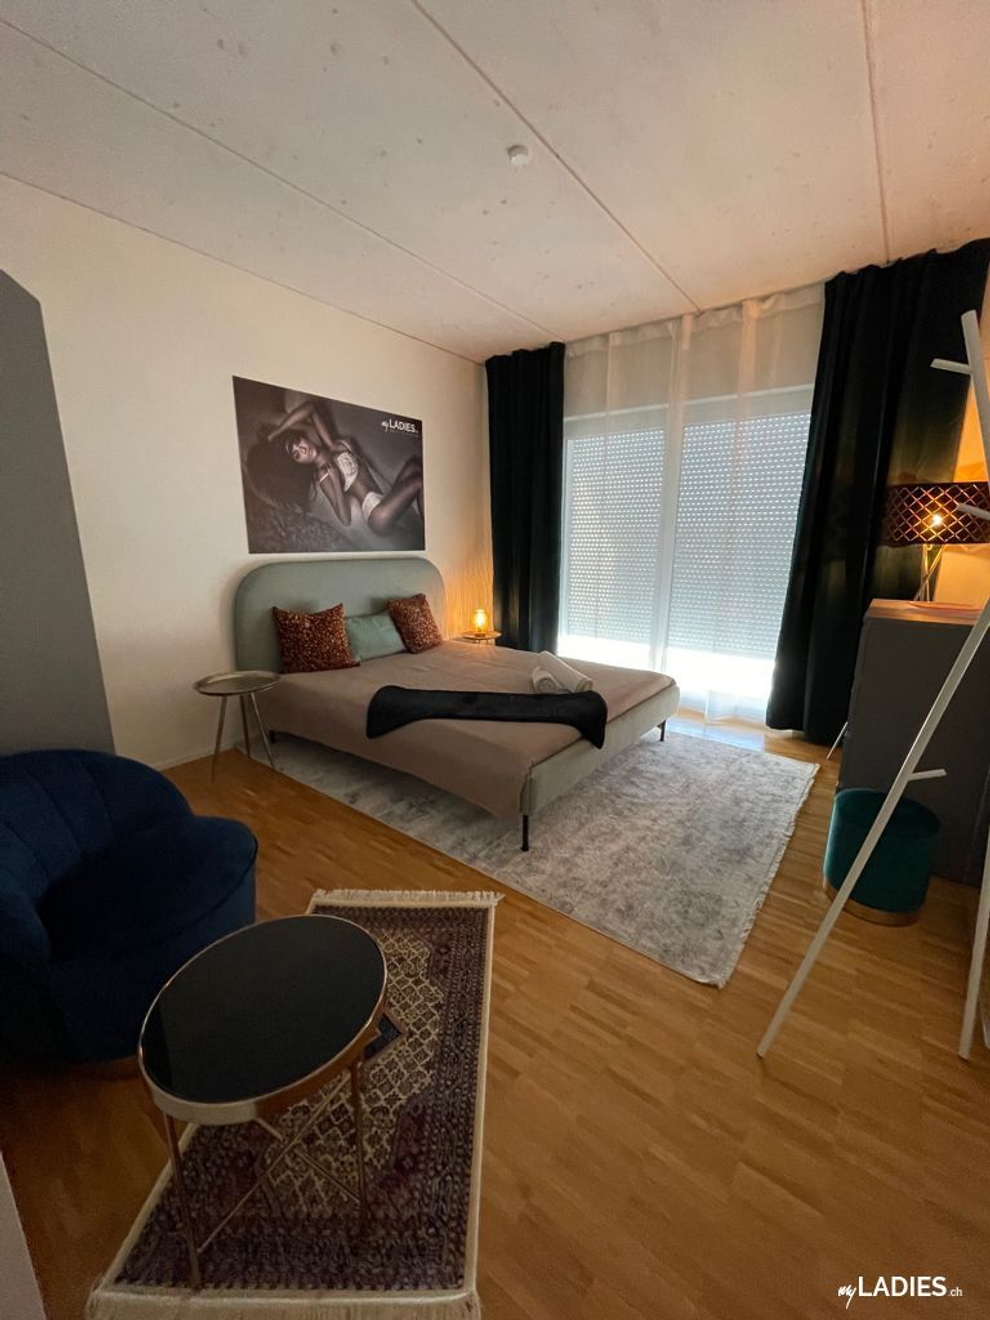 Zimmer / Rooms / Habitaciones in Einsiedeln / Bild 1